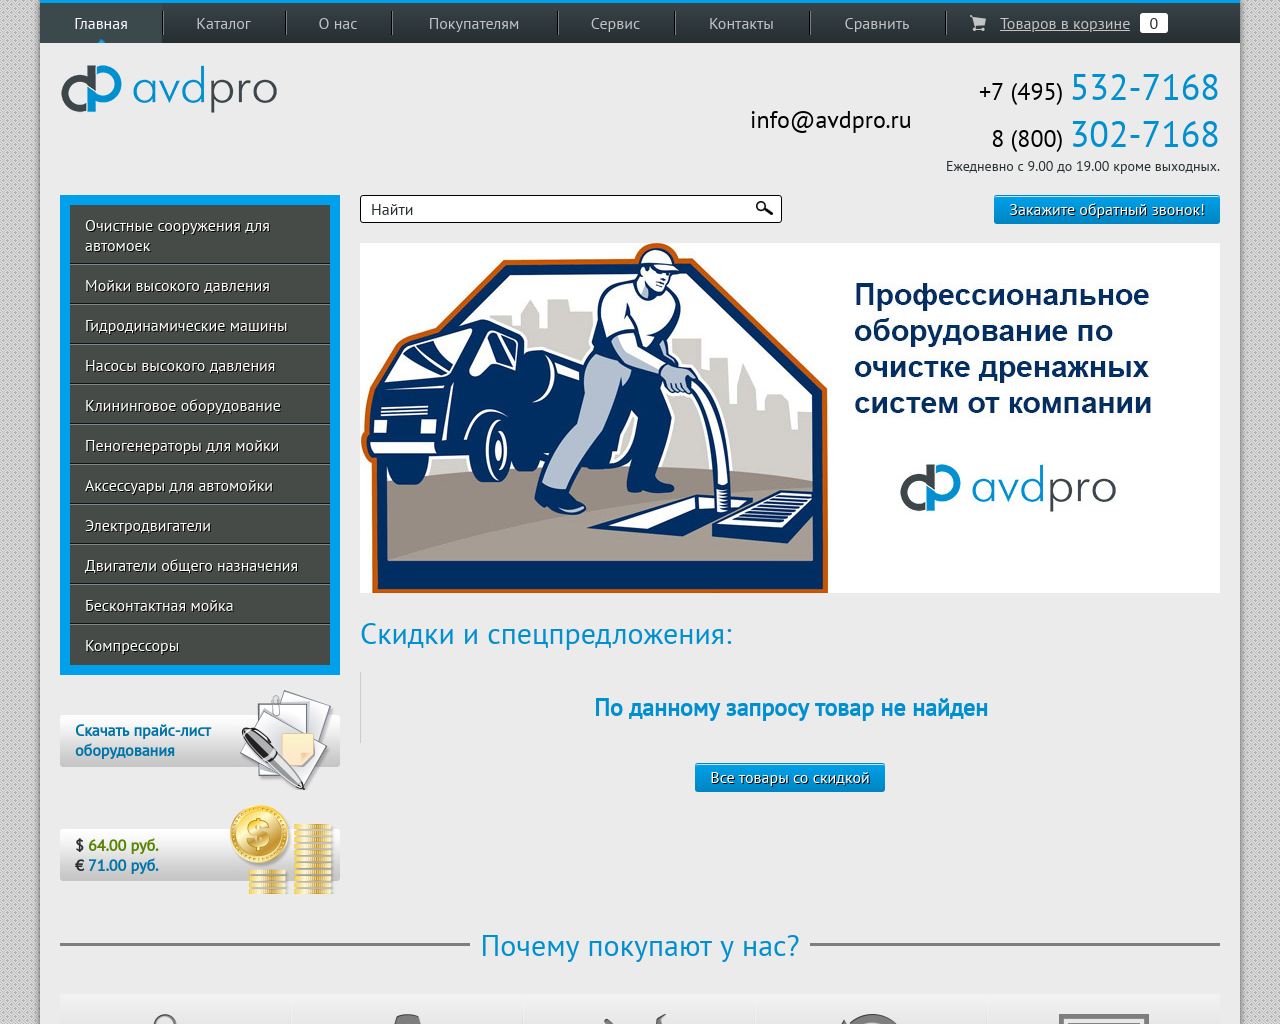 Изображение сайта avdpro.ru в разрешении 1280x1024